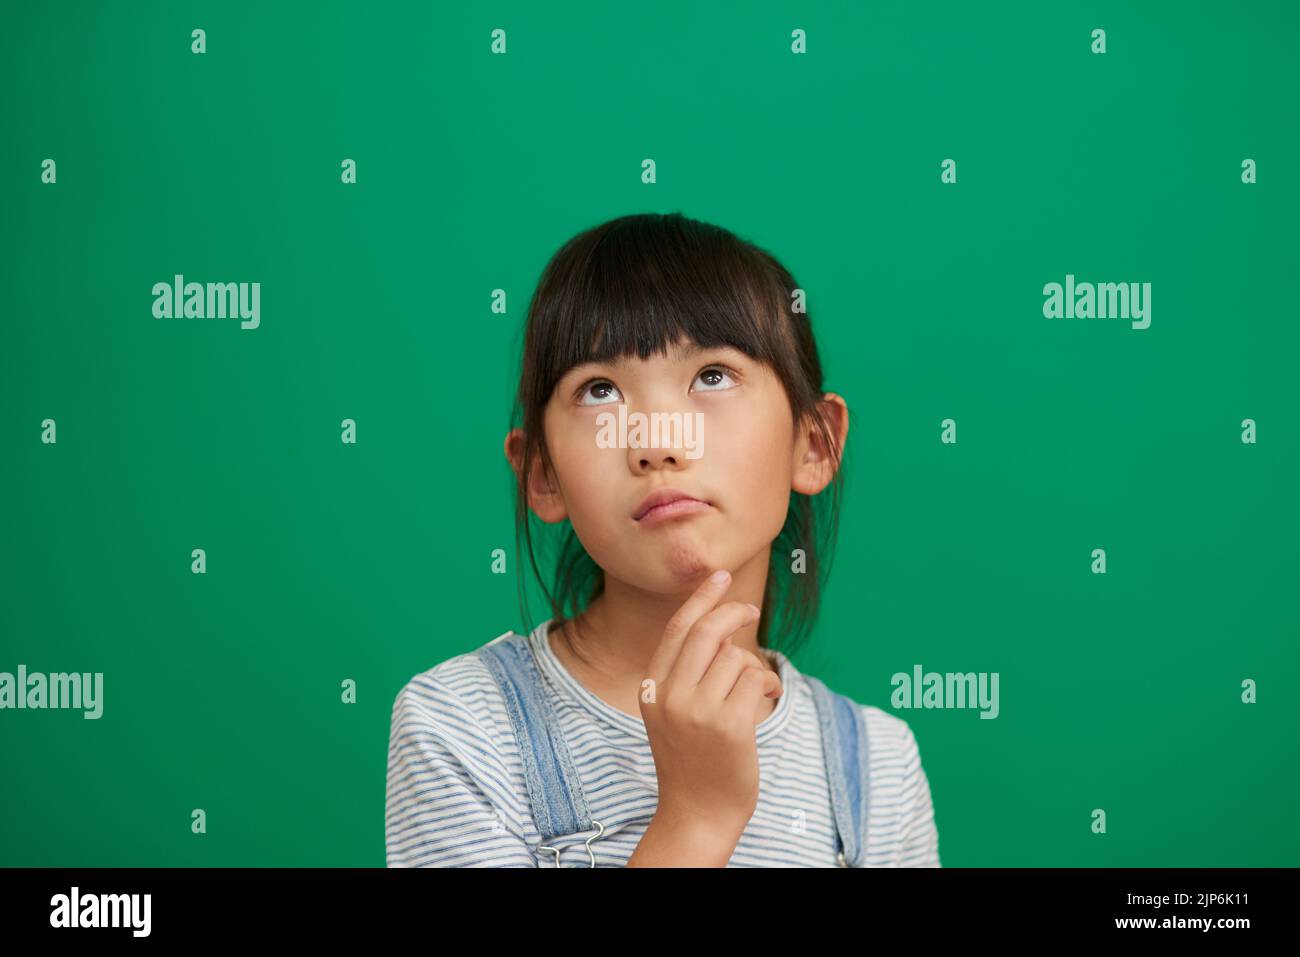 Was soll ich heute tun? Studioaufnahme eines entzückenden kleinen Mädchens, das vor grünem Hintergrund steht und nachdenkt. Stockfoto